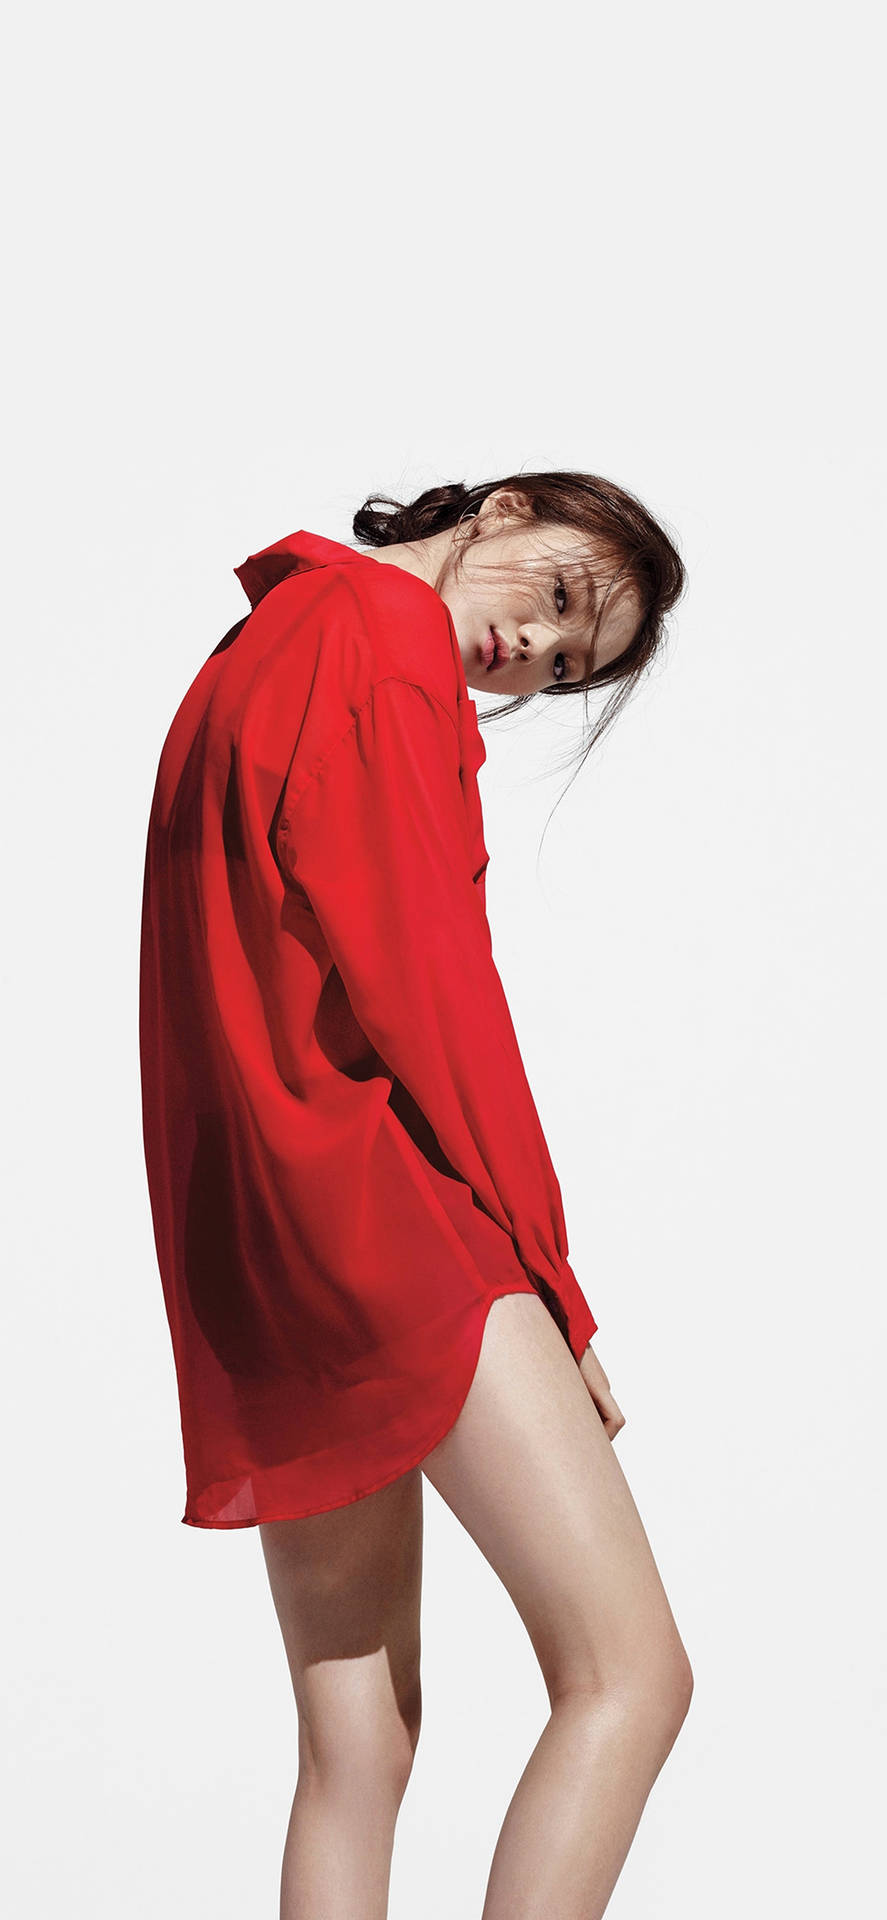 Koreansktkvinnligt Modell Lee Sung Kyung Marie Claire Korea Magazine. Wallpaper